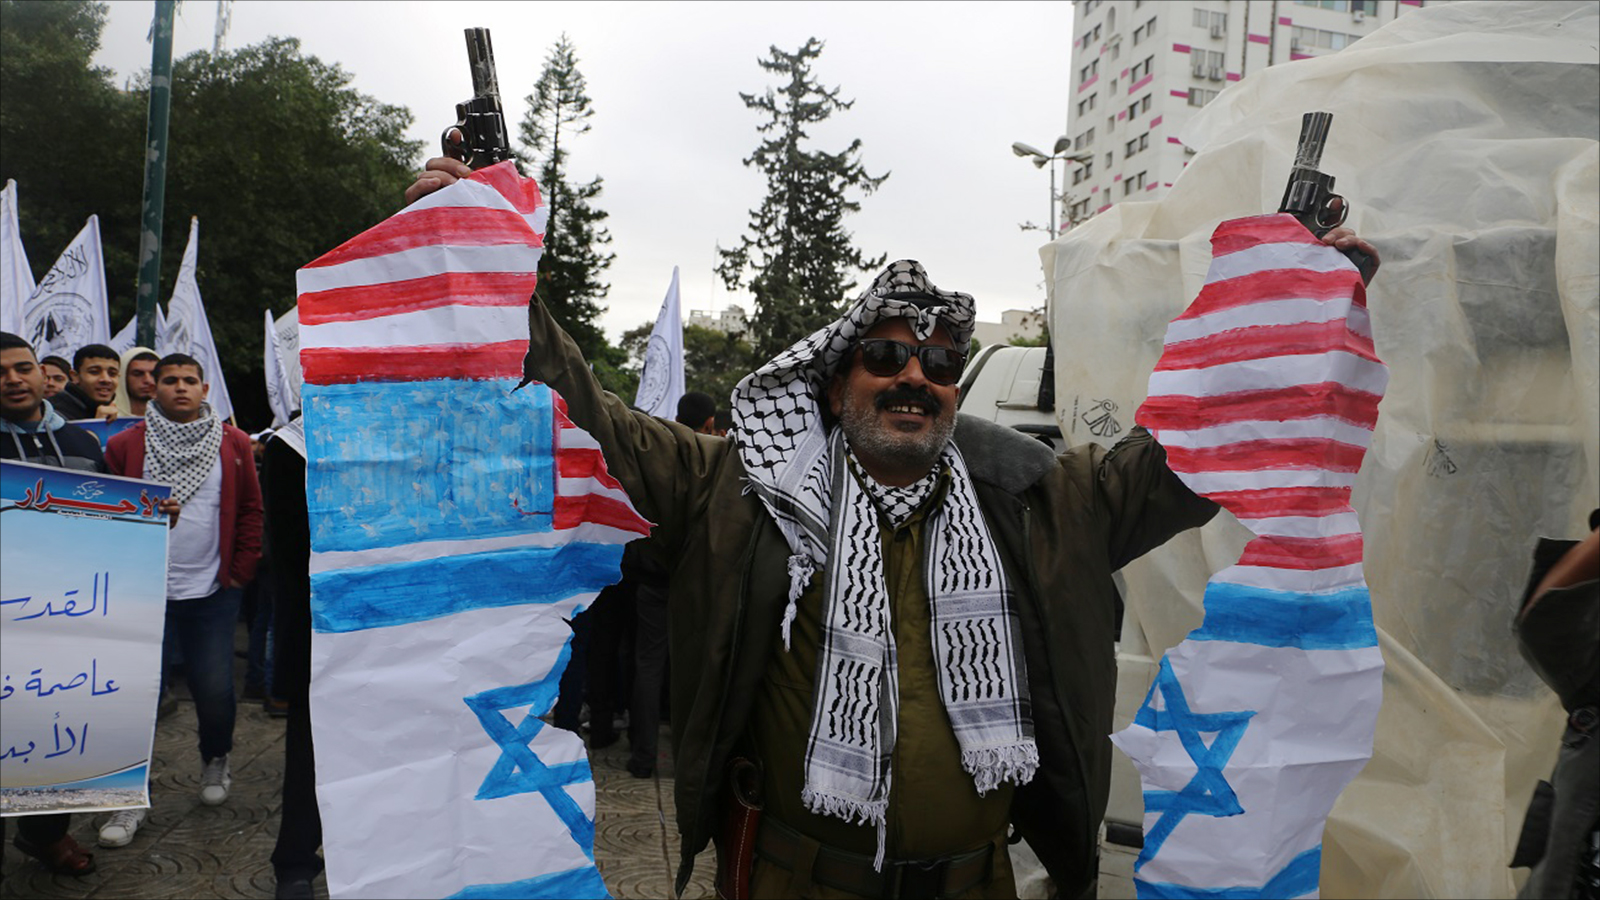  أبو بكر النحال في مسيرة الفصائل بغزة قبل ساعات من إعلان ترمب موقف إدارته بشأن اعتبار القدس عاصمة لإسرائيل(الجزيرة)